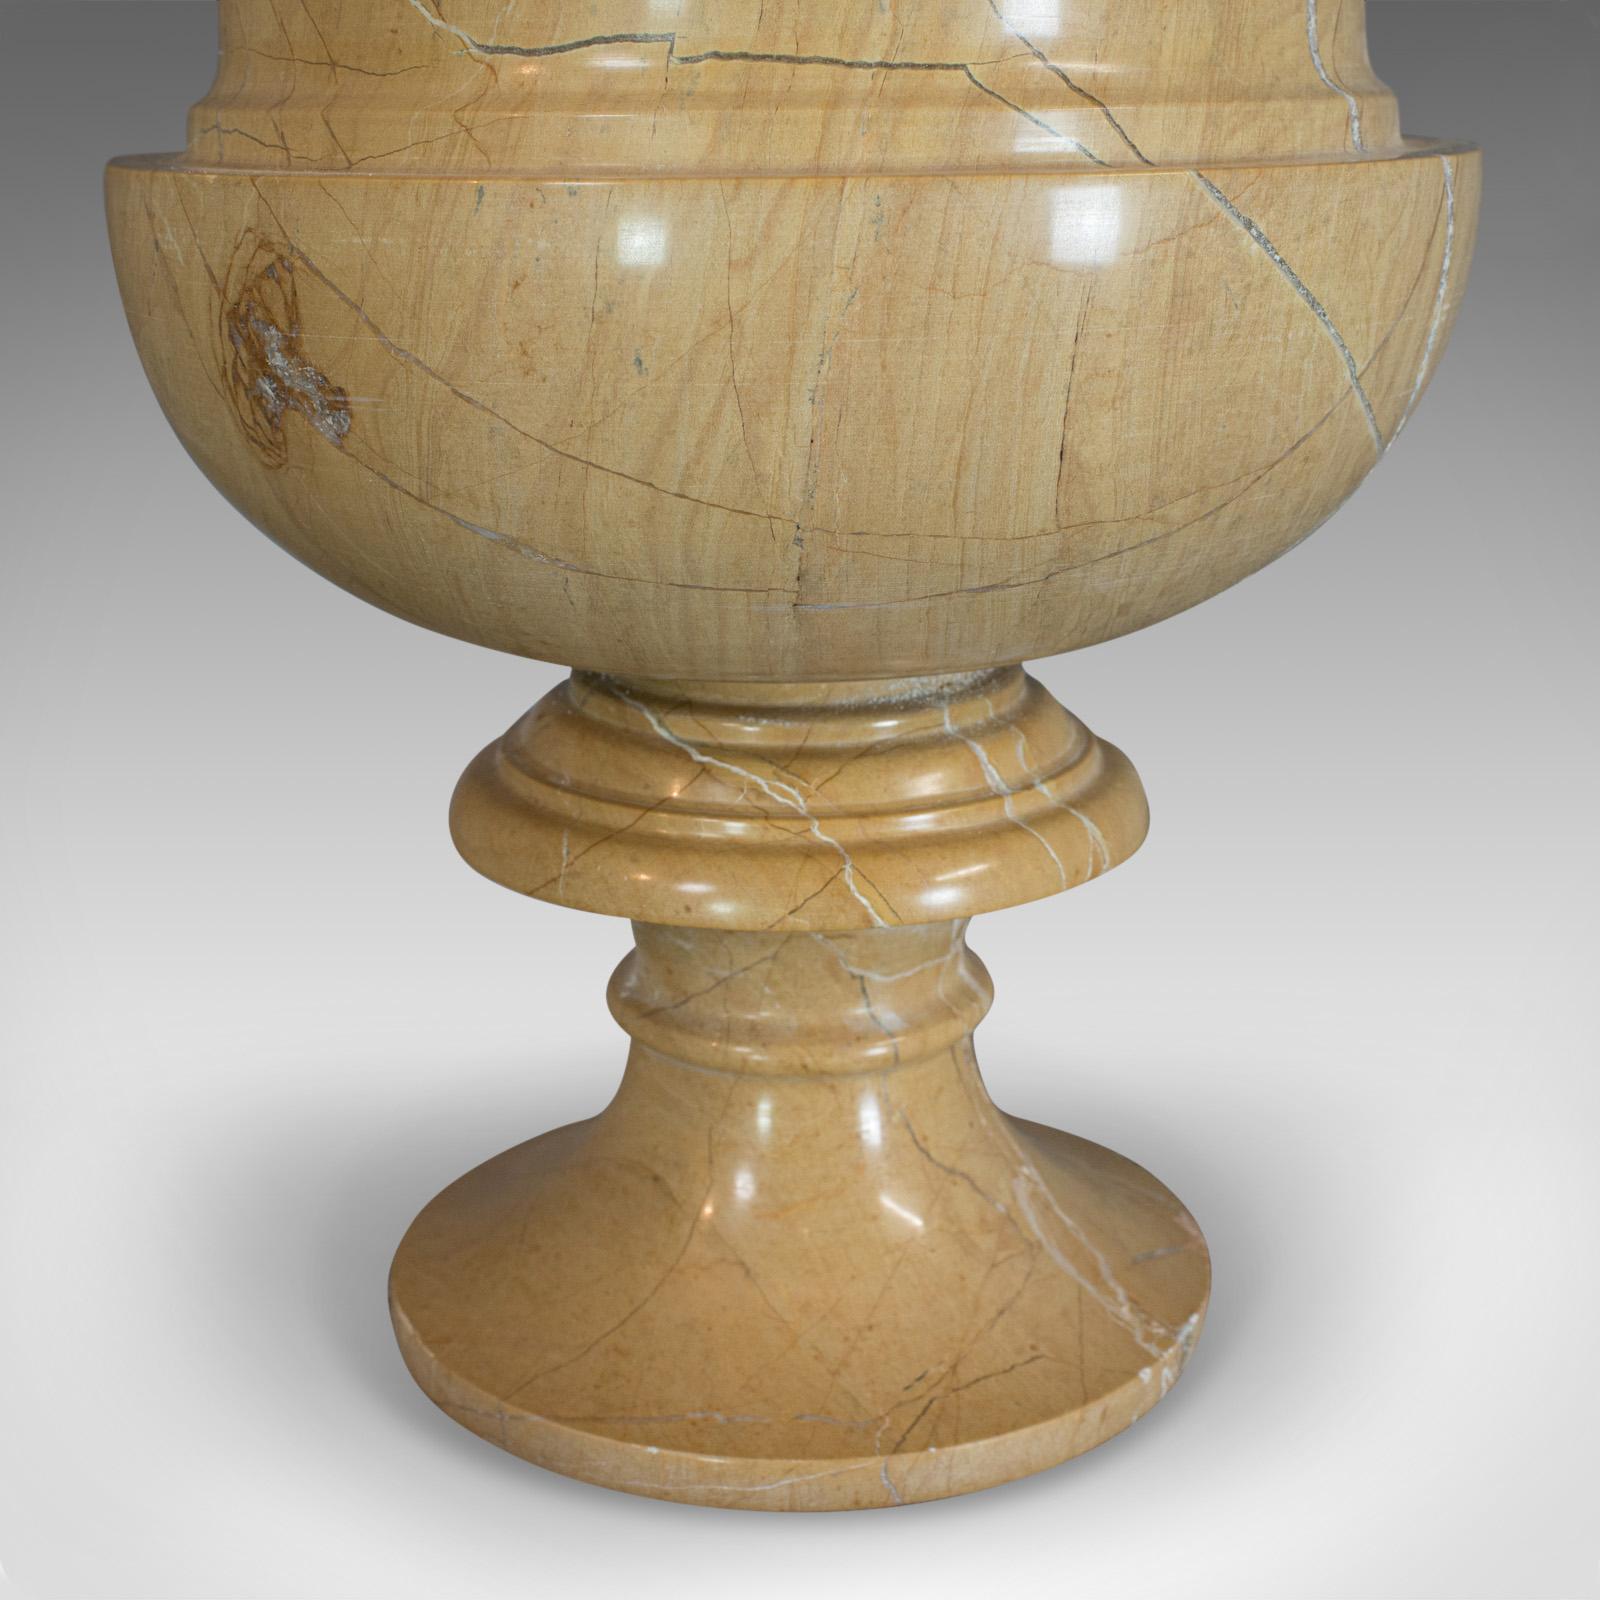 Vintage Ornamental Baluster Urn, English, Golden Pearl Marble, Decorative, Vase For Sale 5